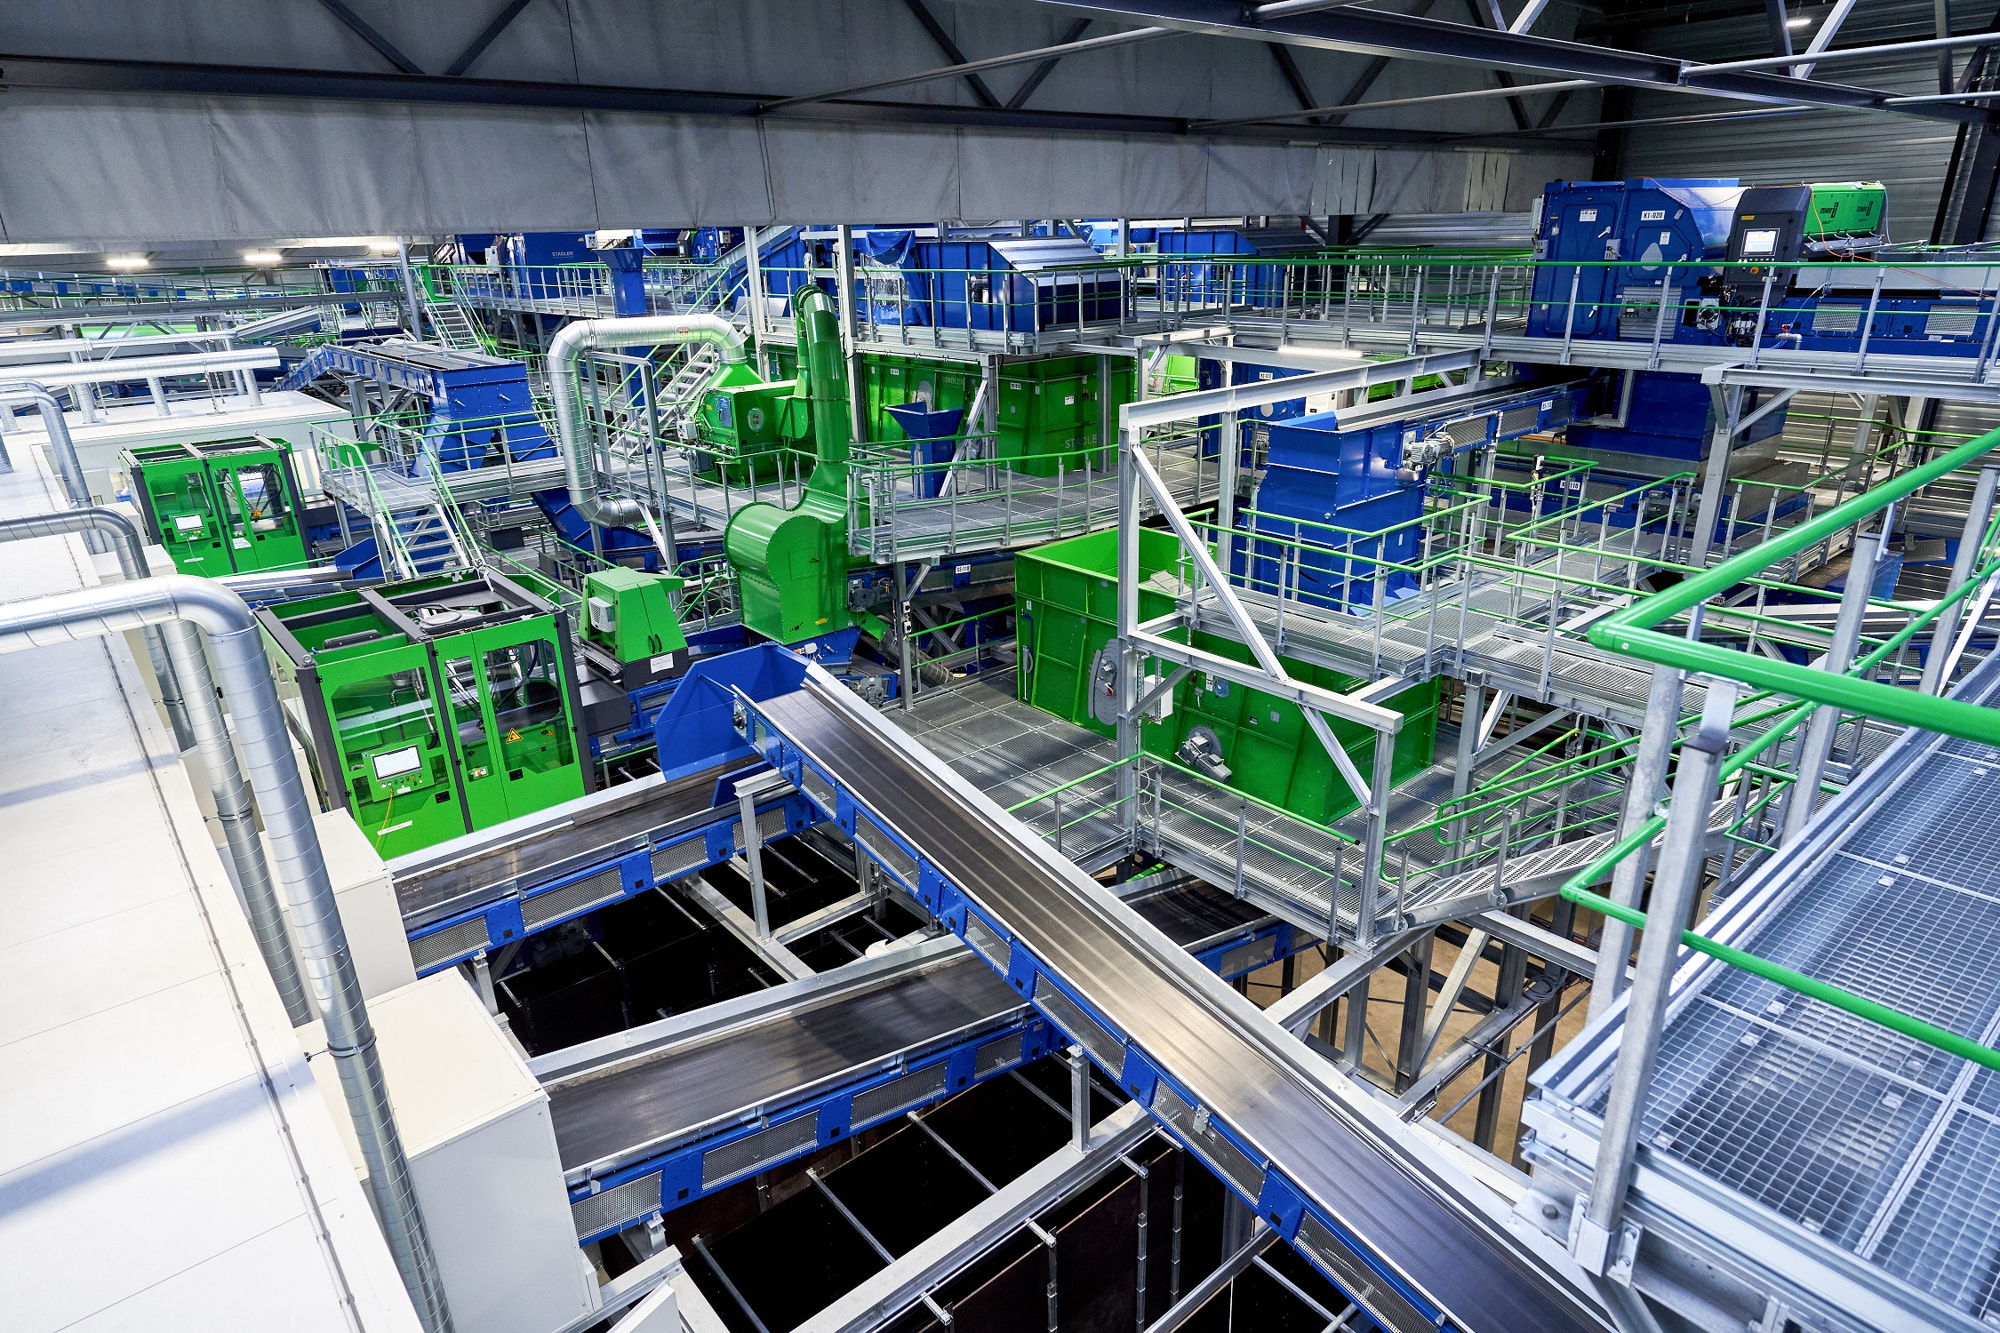 Le nouveau centre de tri de PMC (emballages légers issus des ménages) de PreZero à Evergem en Belgique trie environ 80.000 tonnes de PMC par an ; les éléments centraux du système sont 26 appareils NIR.